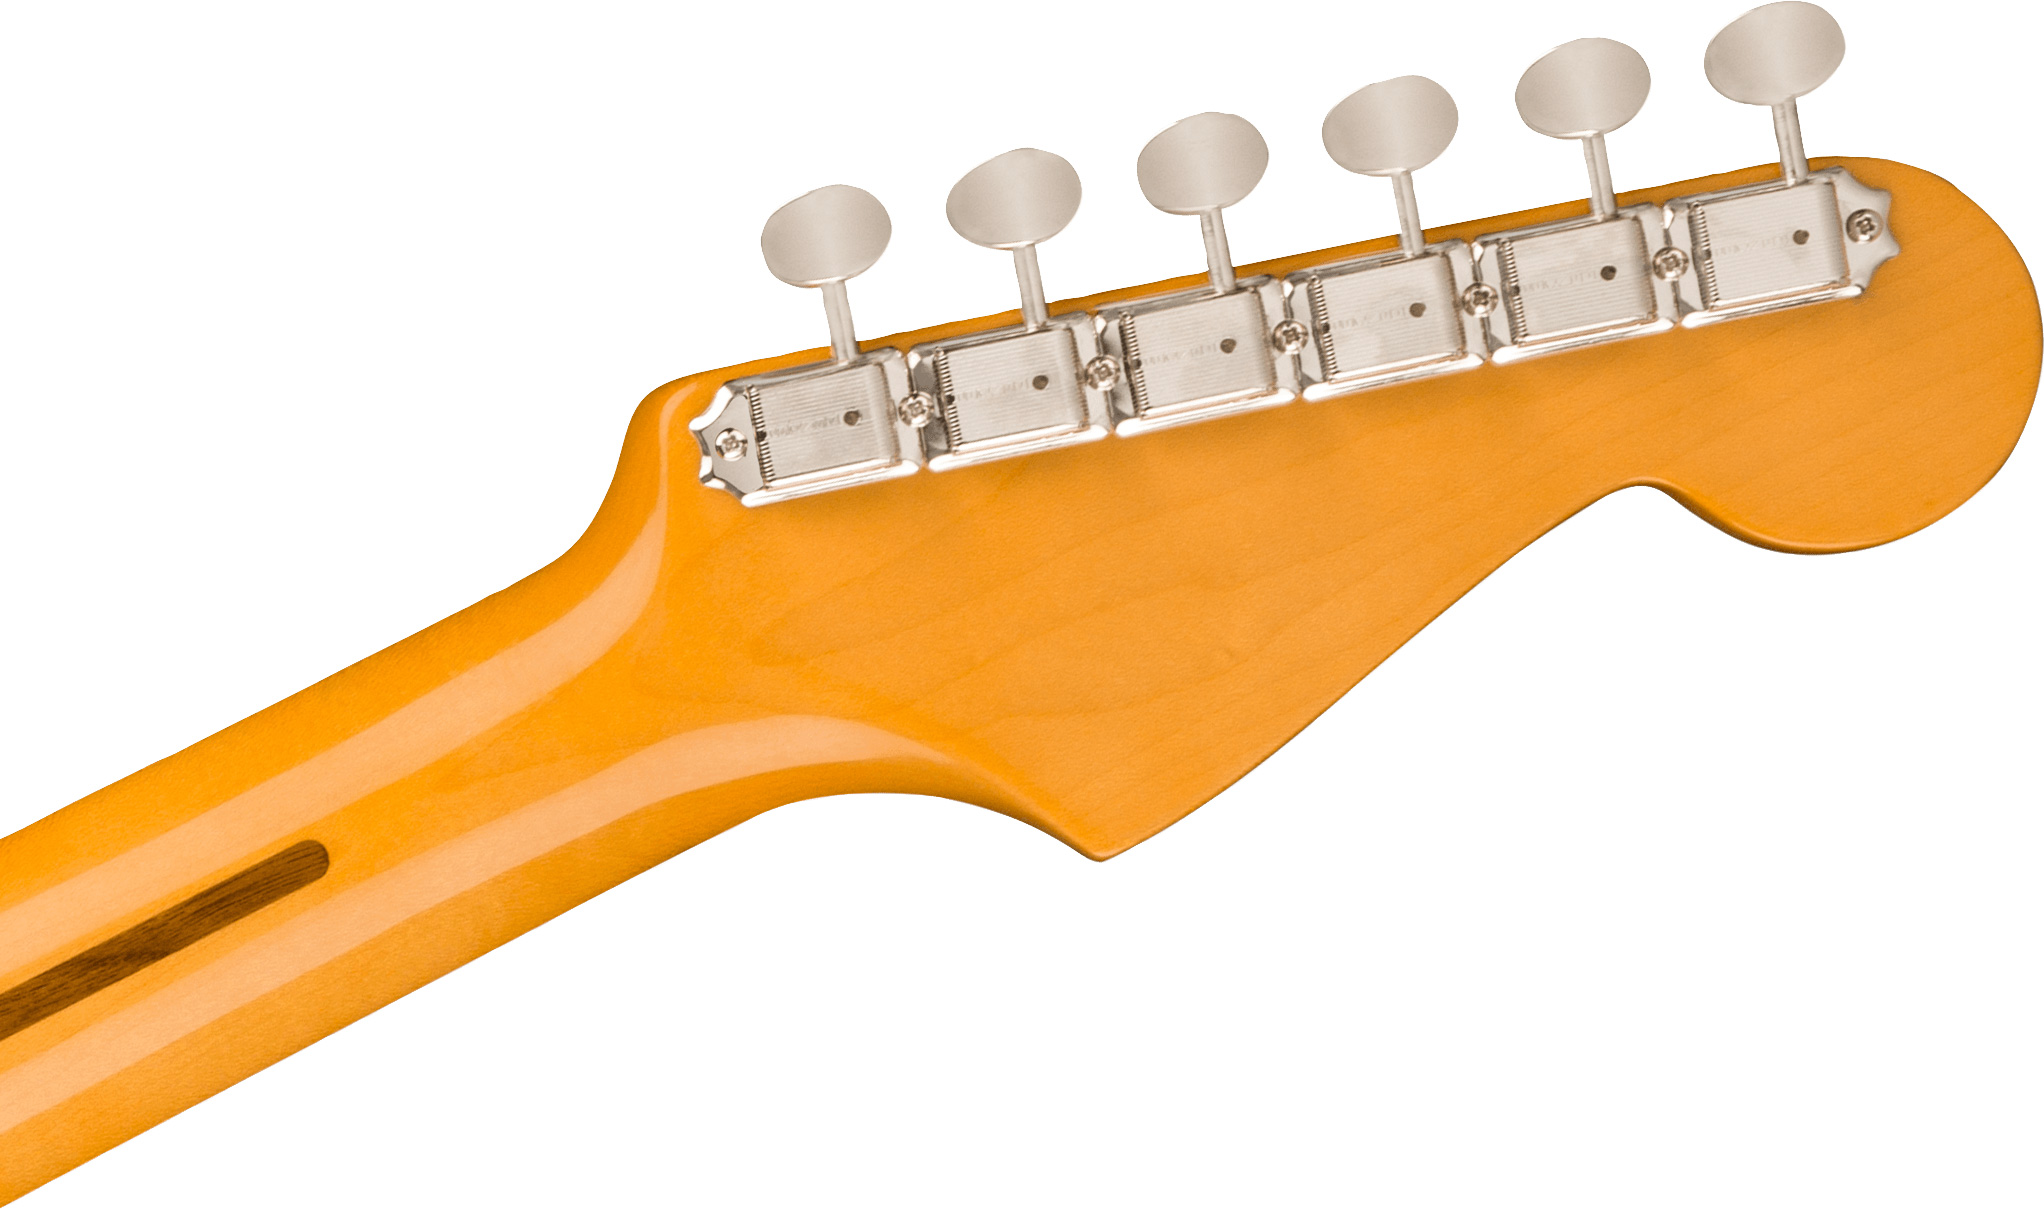 Fender Strat 1957 American Vintage Ii Lh Gaucher Usa 3s Trem Mn - Vintage Blonde - Left-handed electric guitar - Variation 3